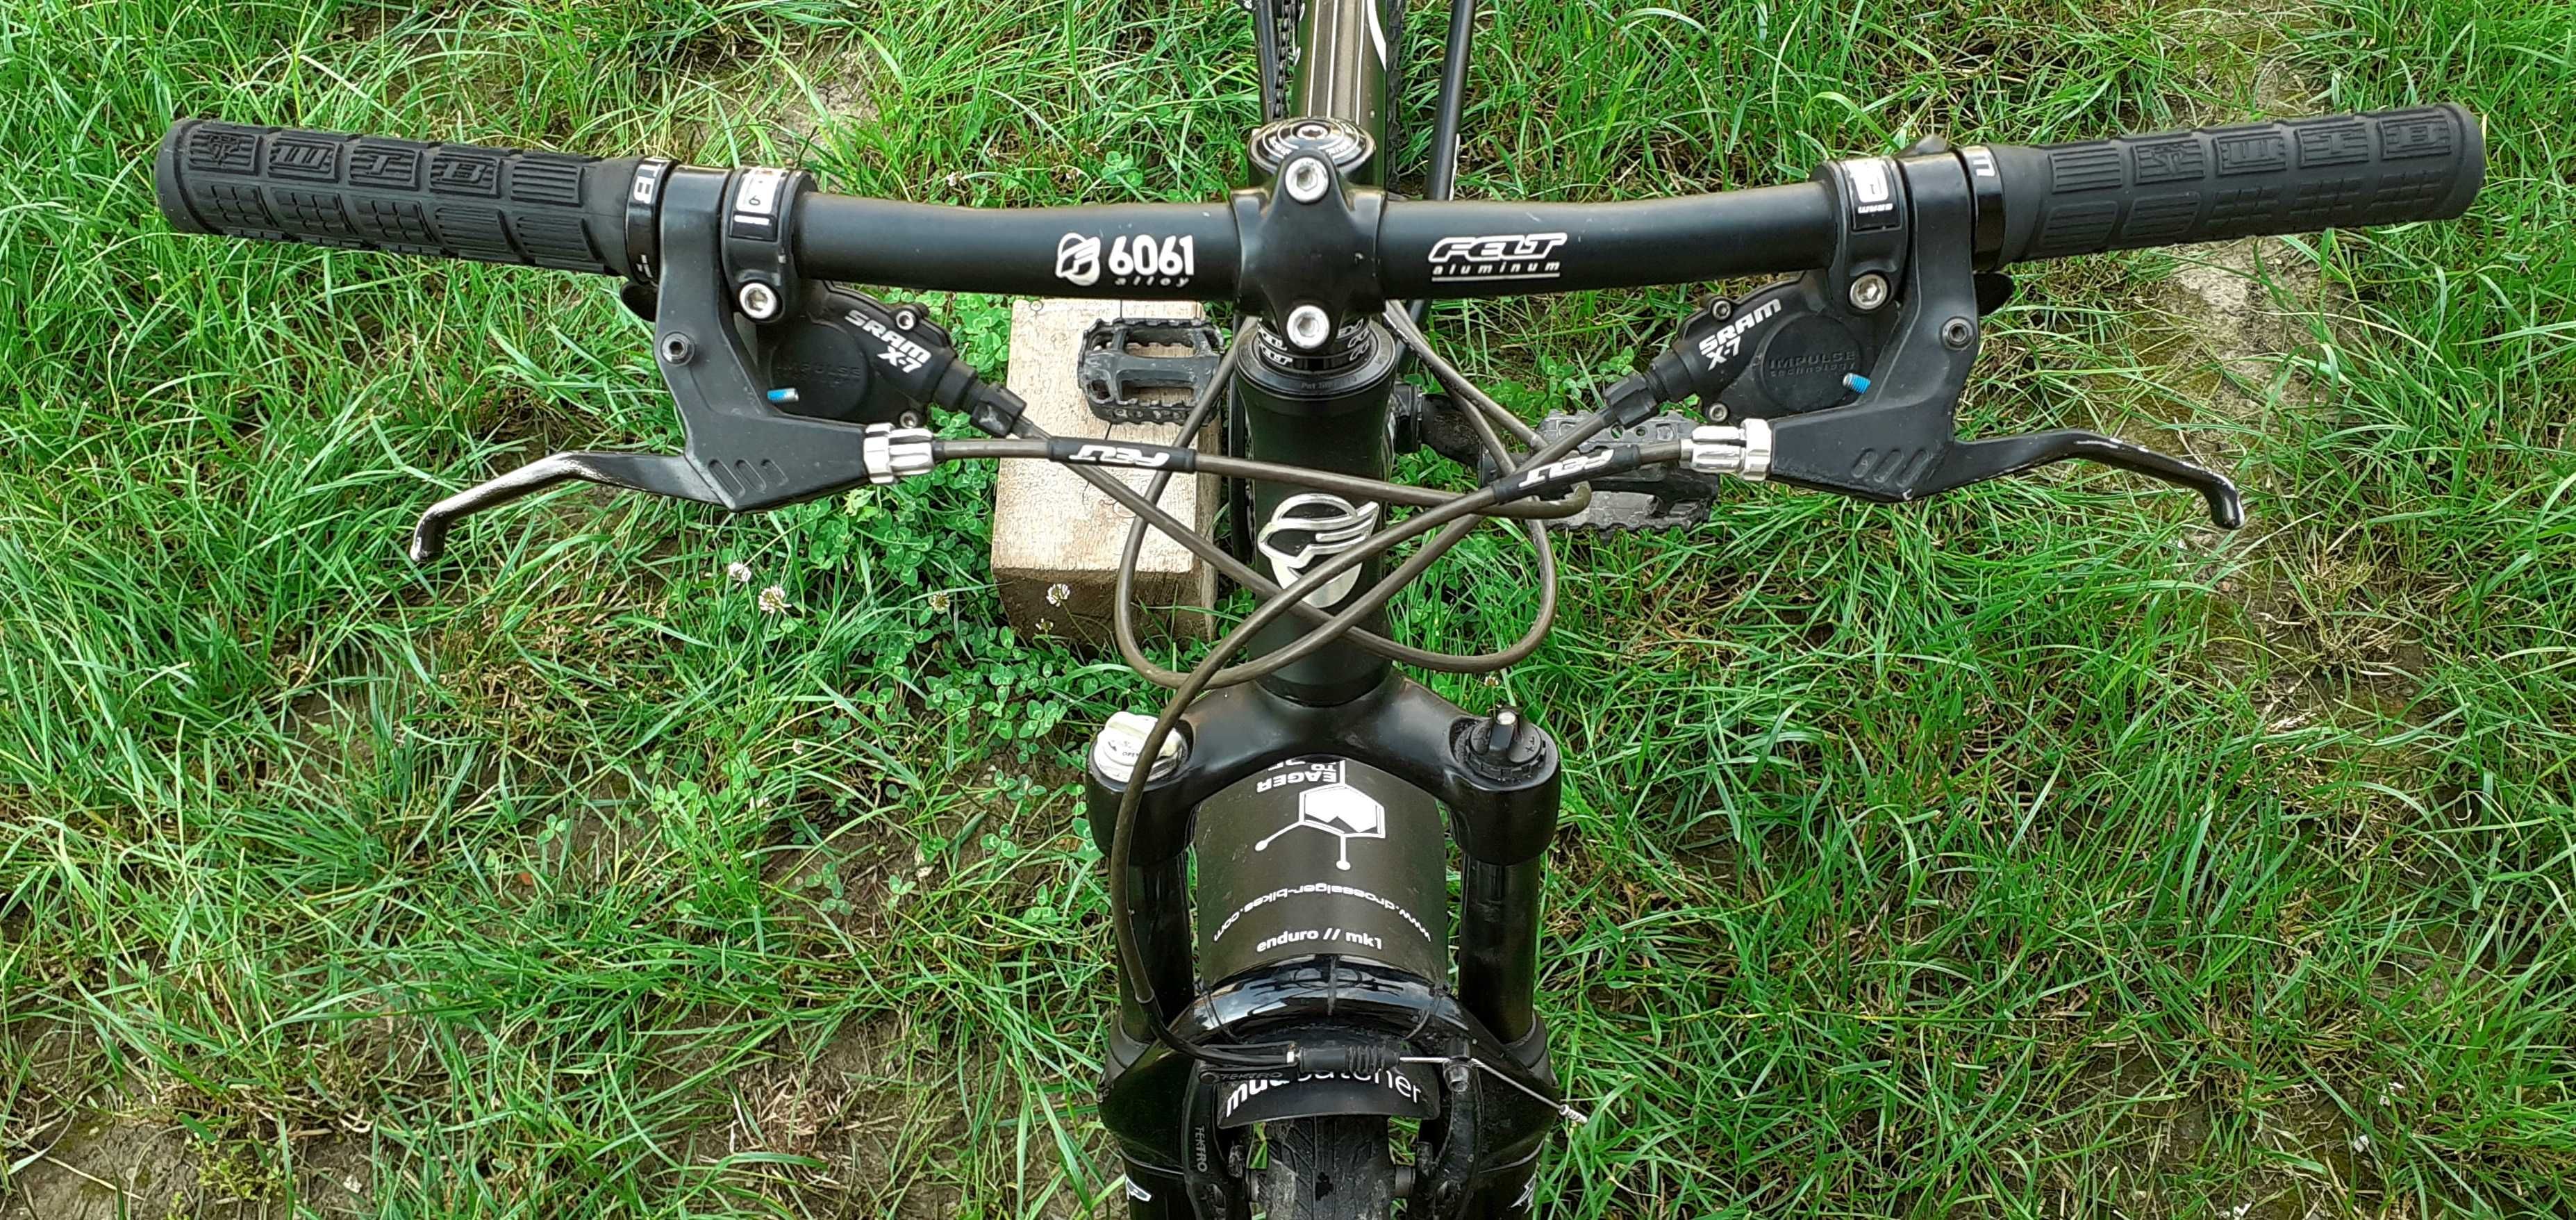 Bicicleta Felt Q800 Superlite